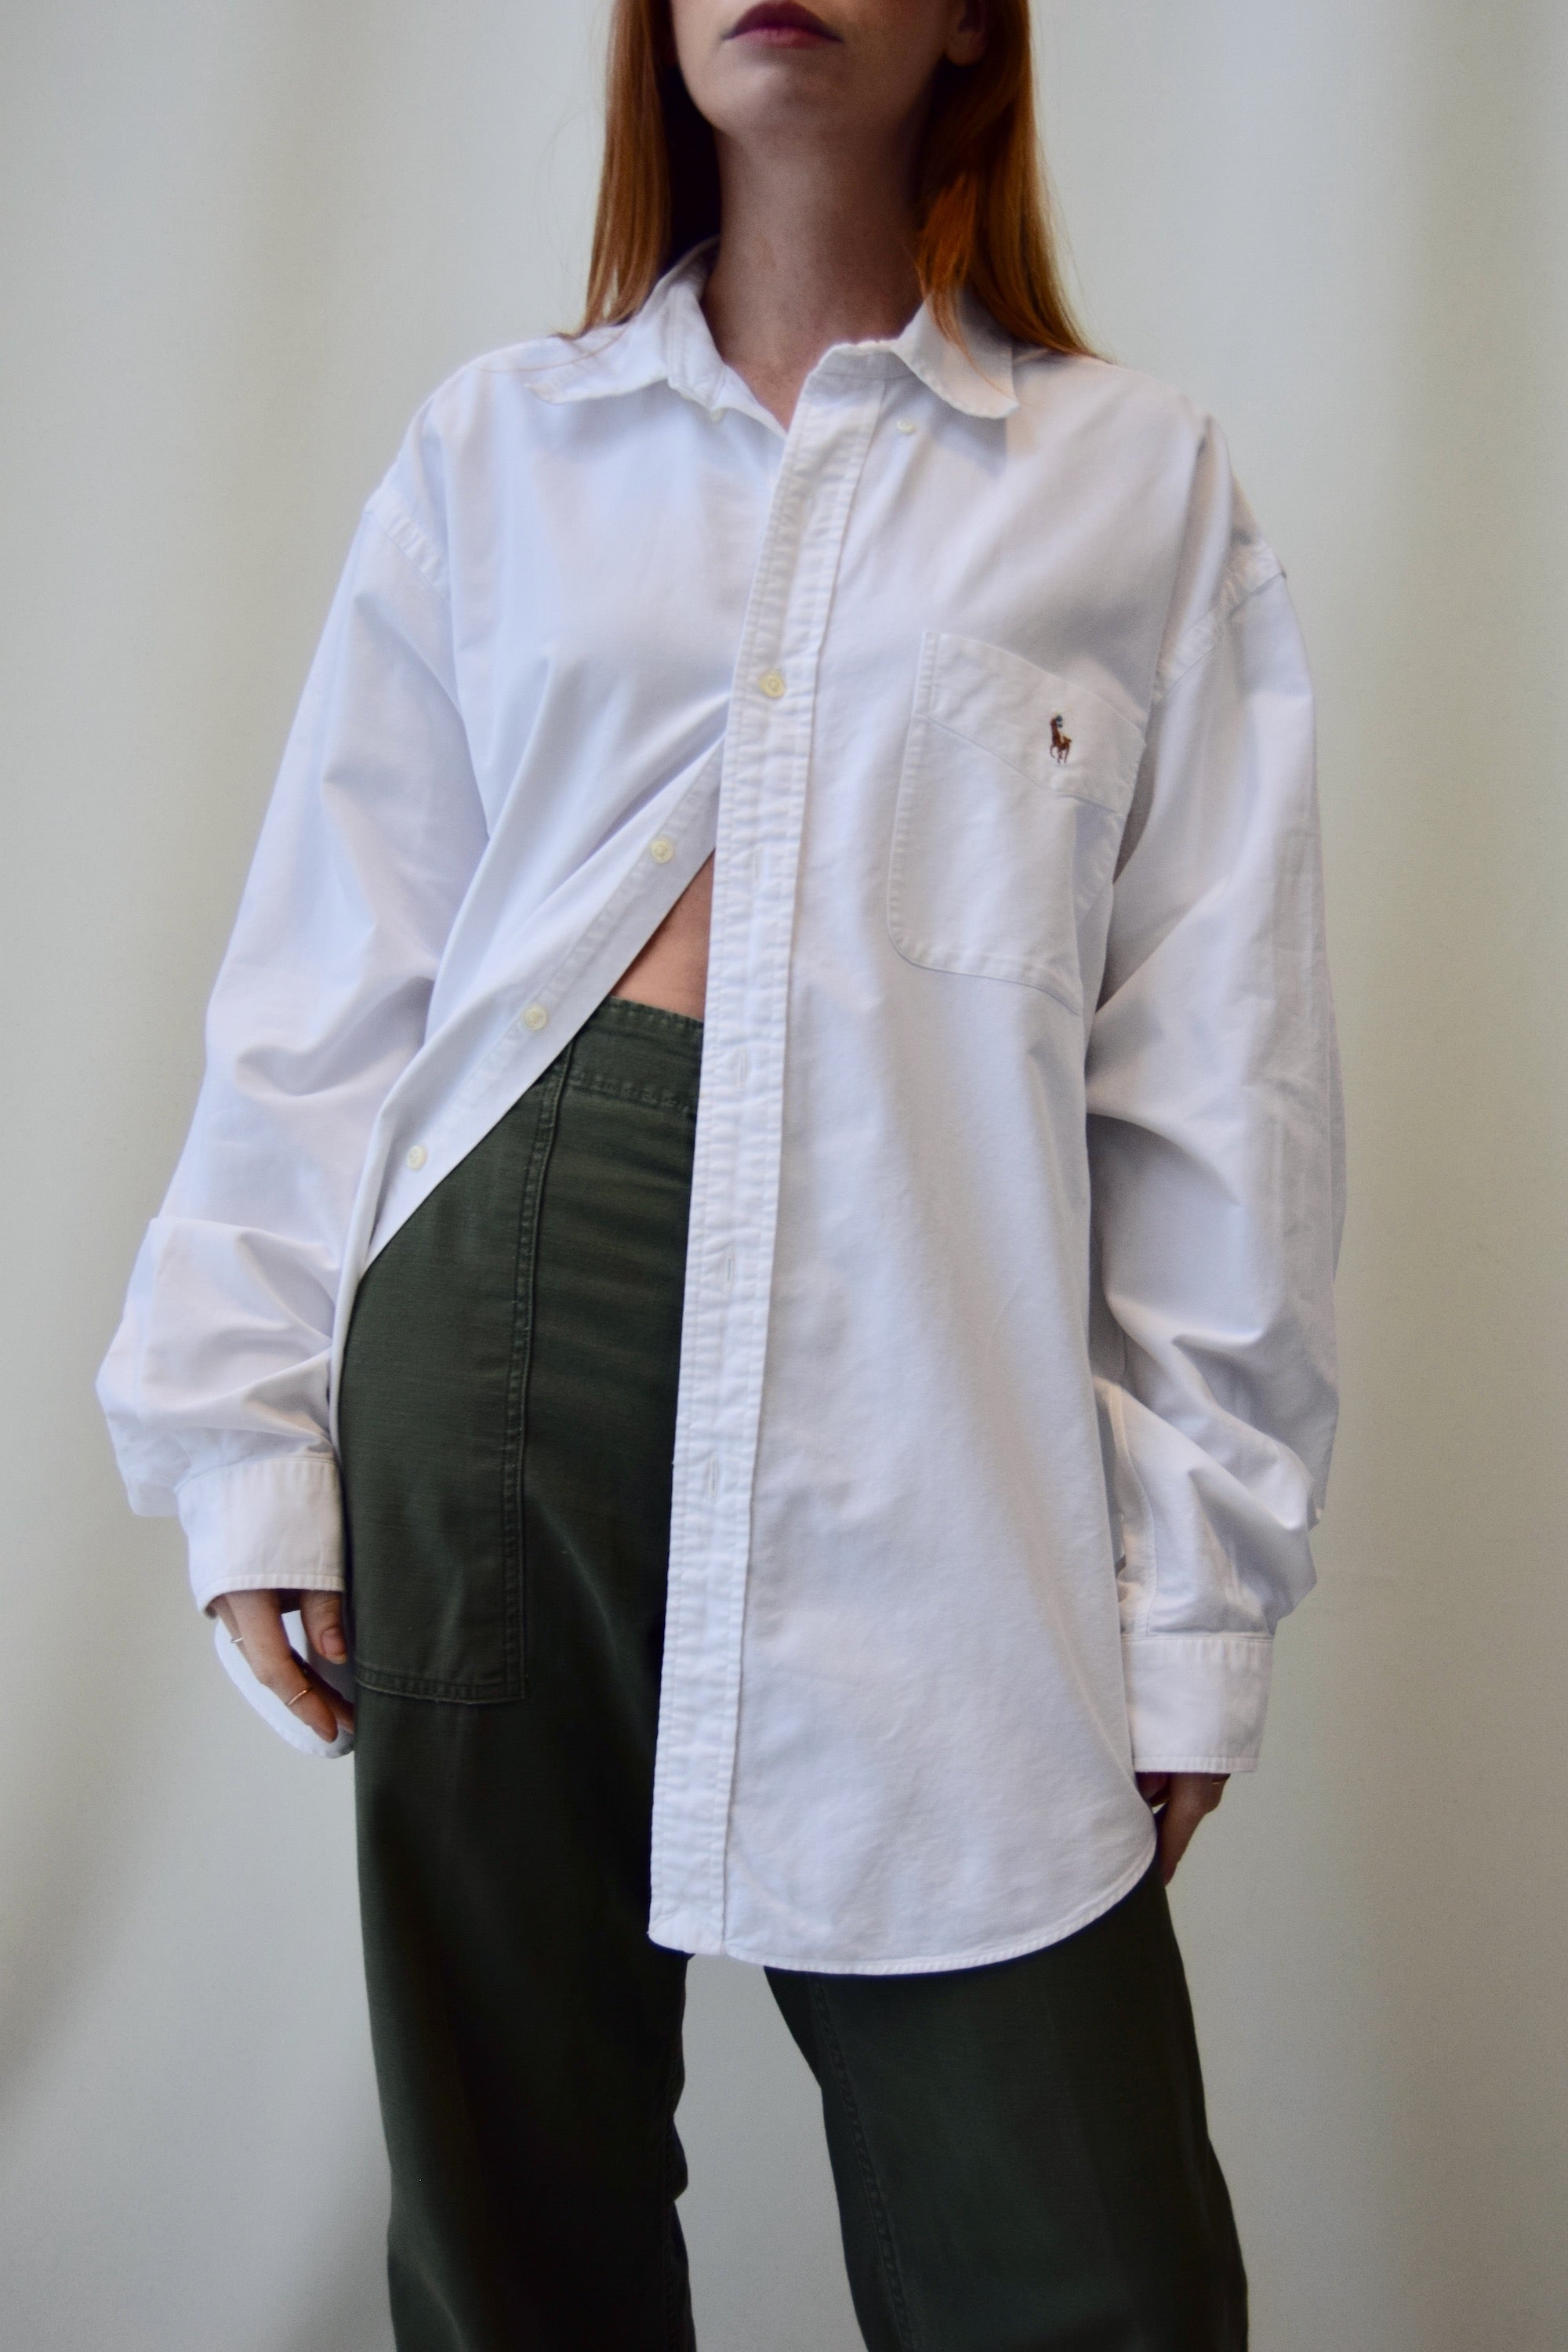 Ralph Lauren "Big Shirt" Button Up